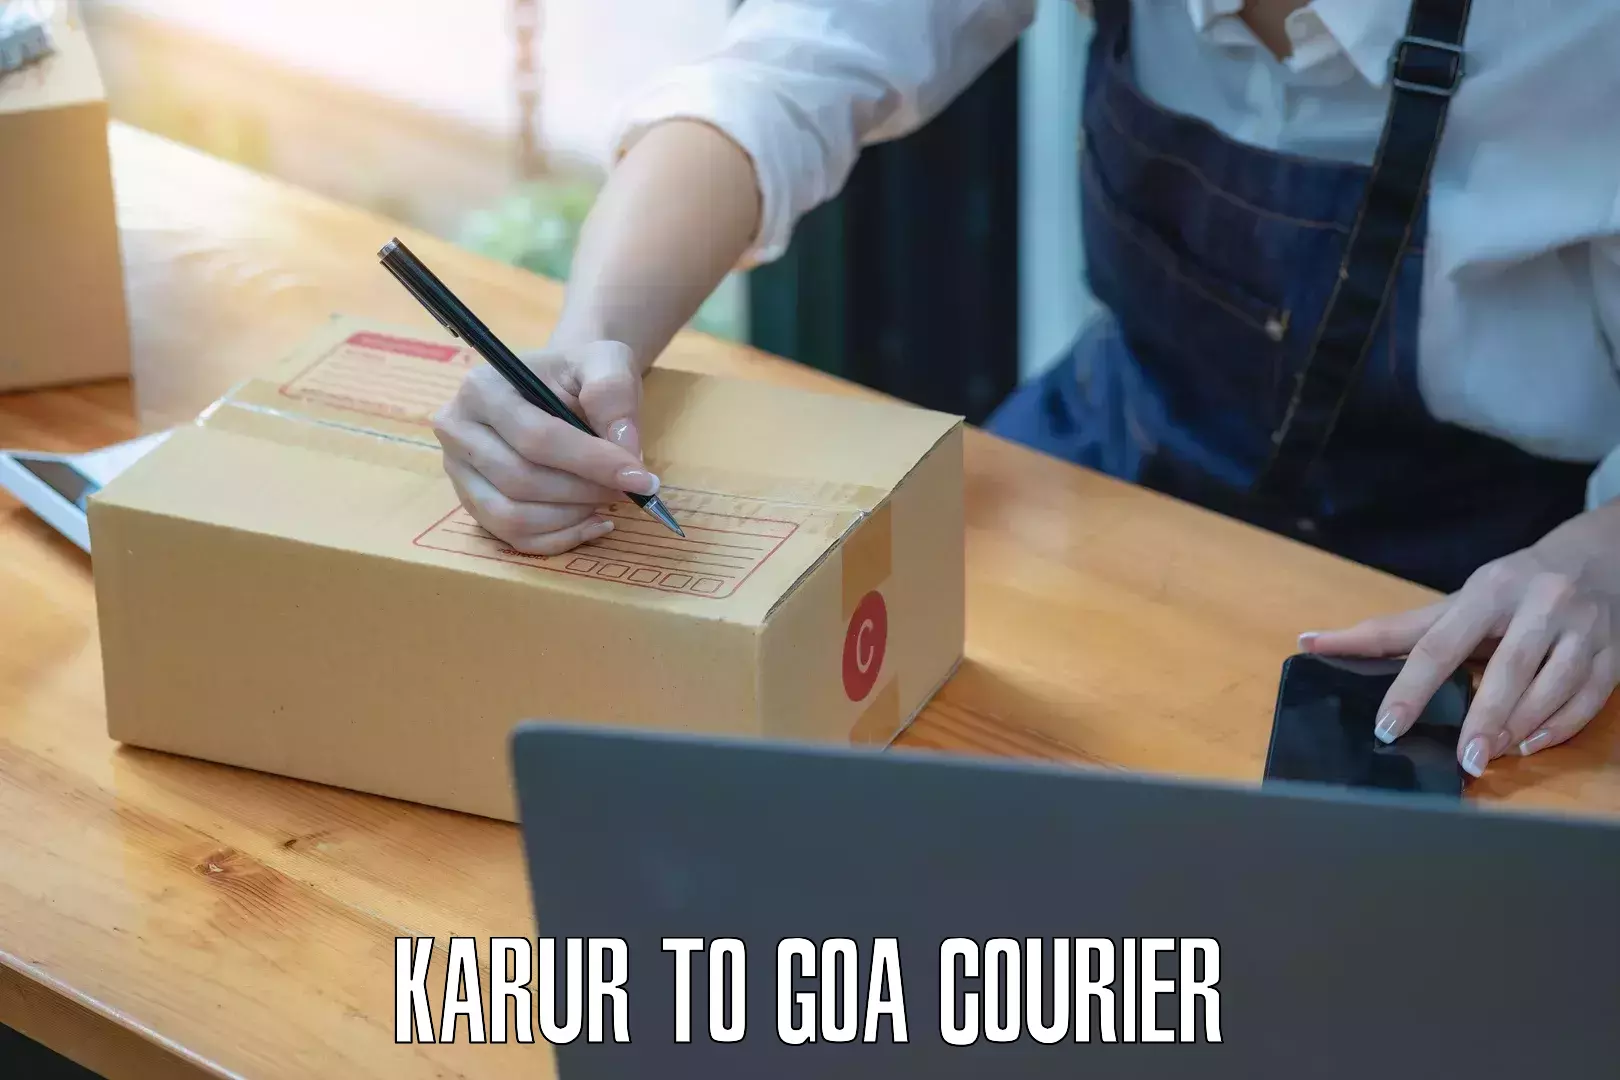 Cargo courier service Karur to Goa